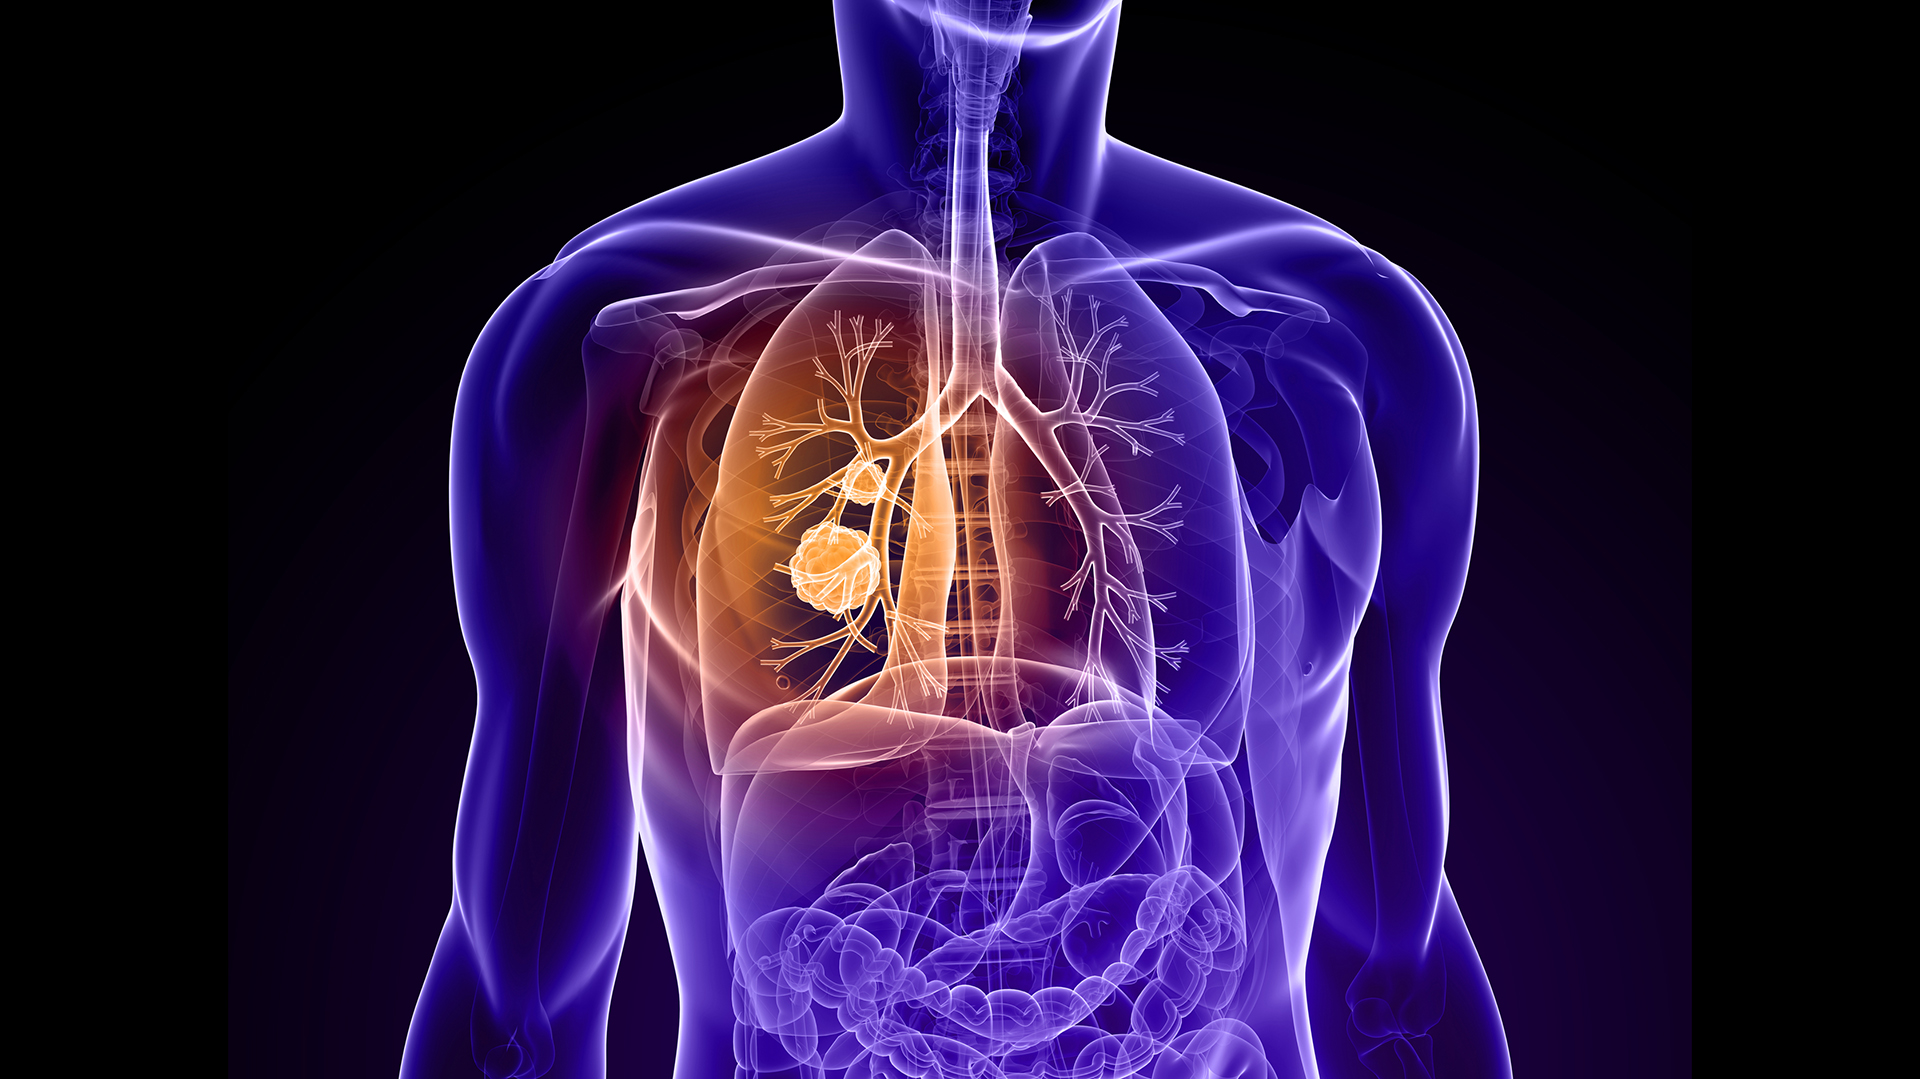 La hipertensión arterial pulmonar es considerada una enfermedad silenciosa porque los síntomas generalmente no aparecen hasta que la patología ha progresado (IStock)